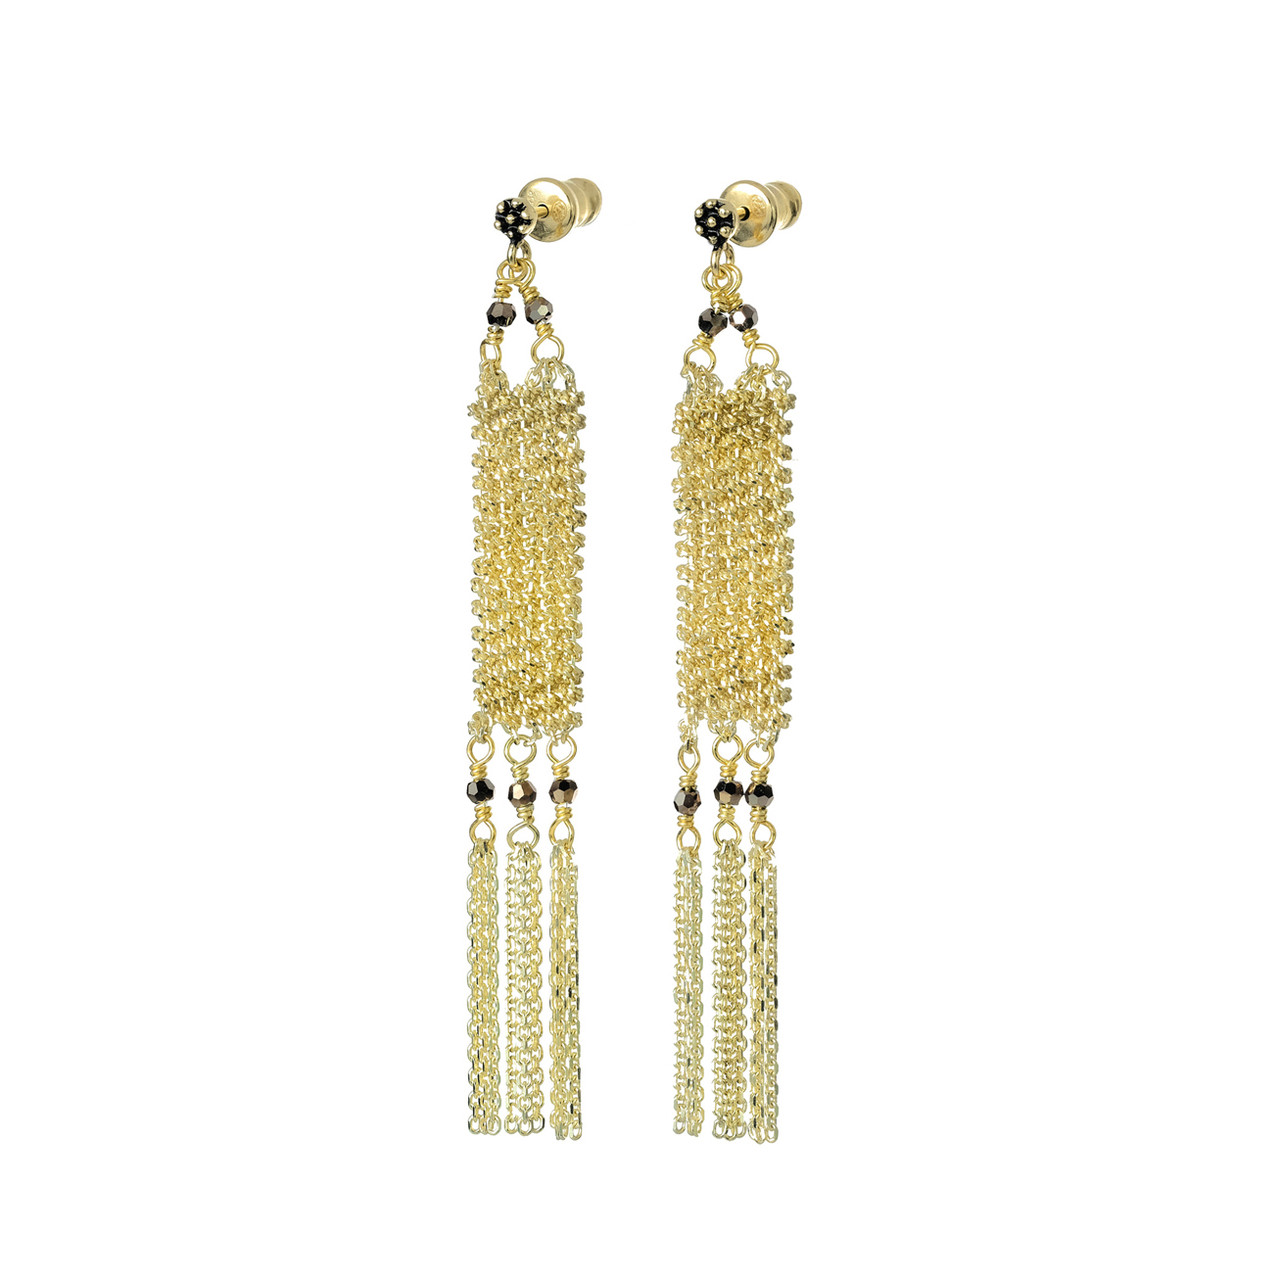 N° 573 Gold Tassel Earrings, Marie Laure Chamorel, tomfoolery